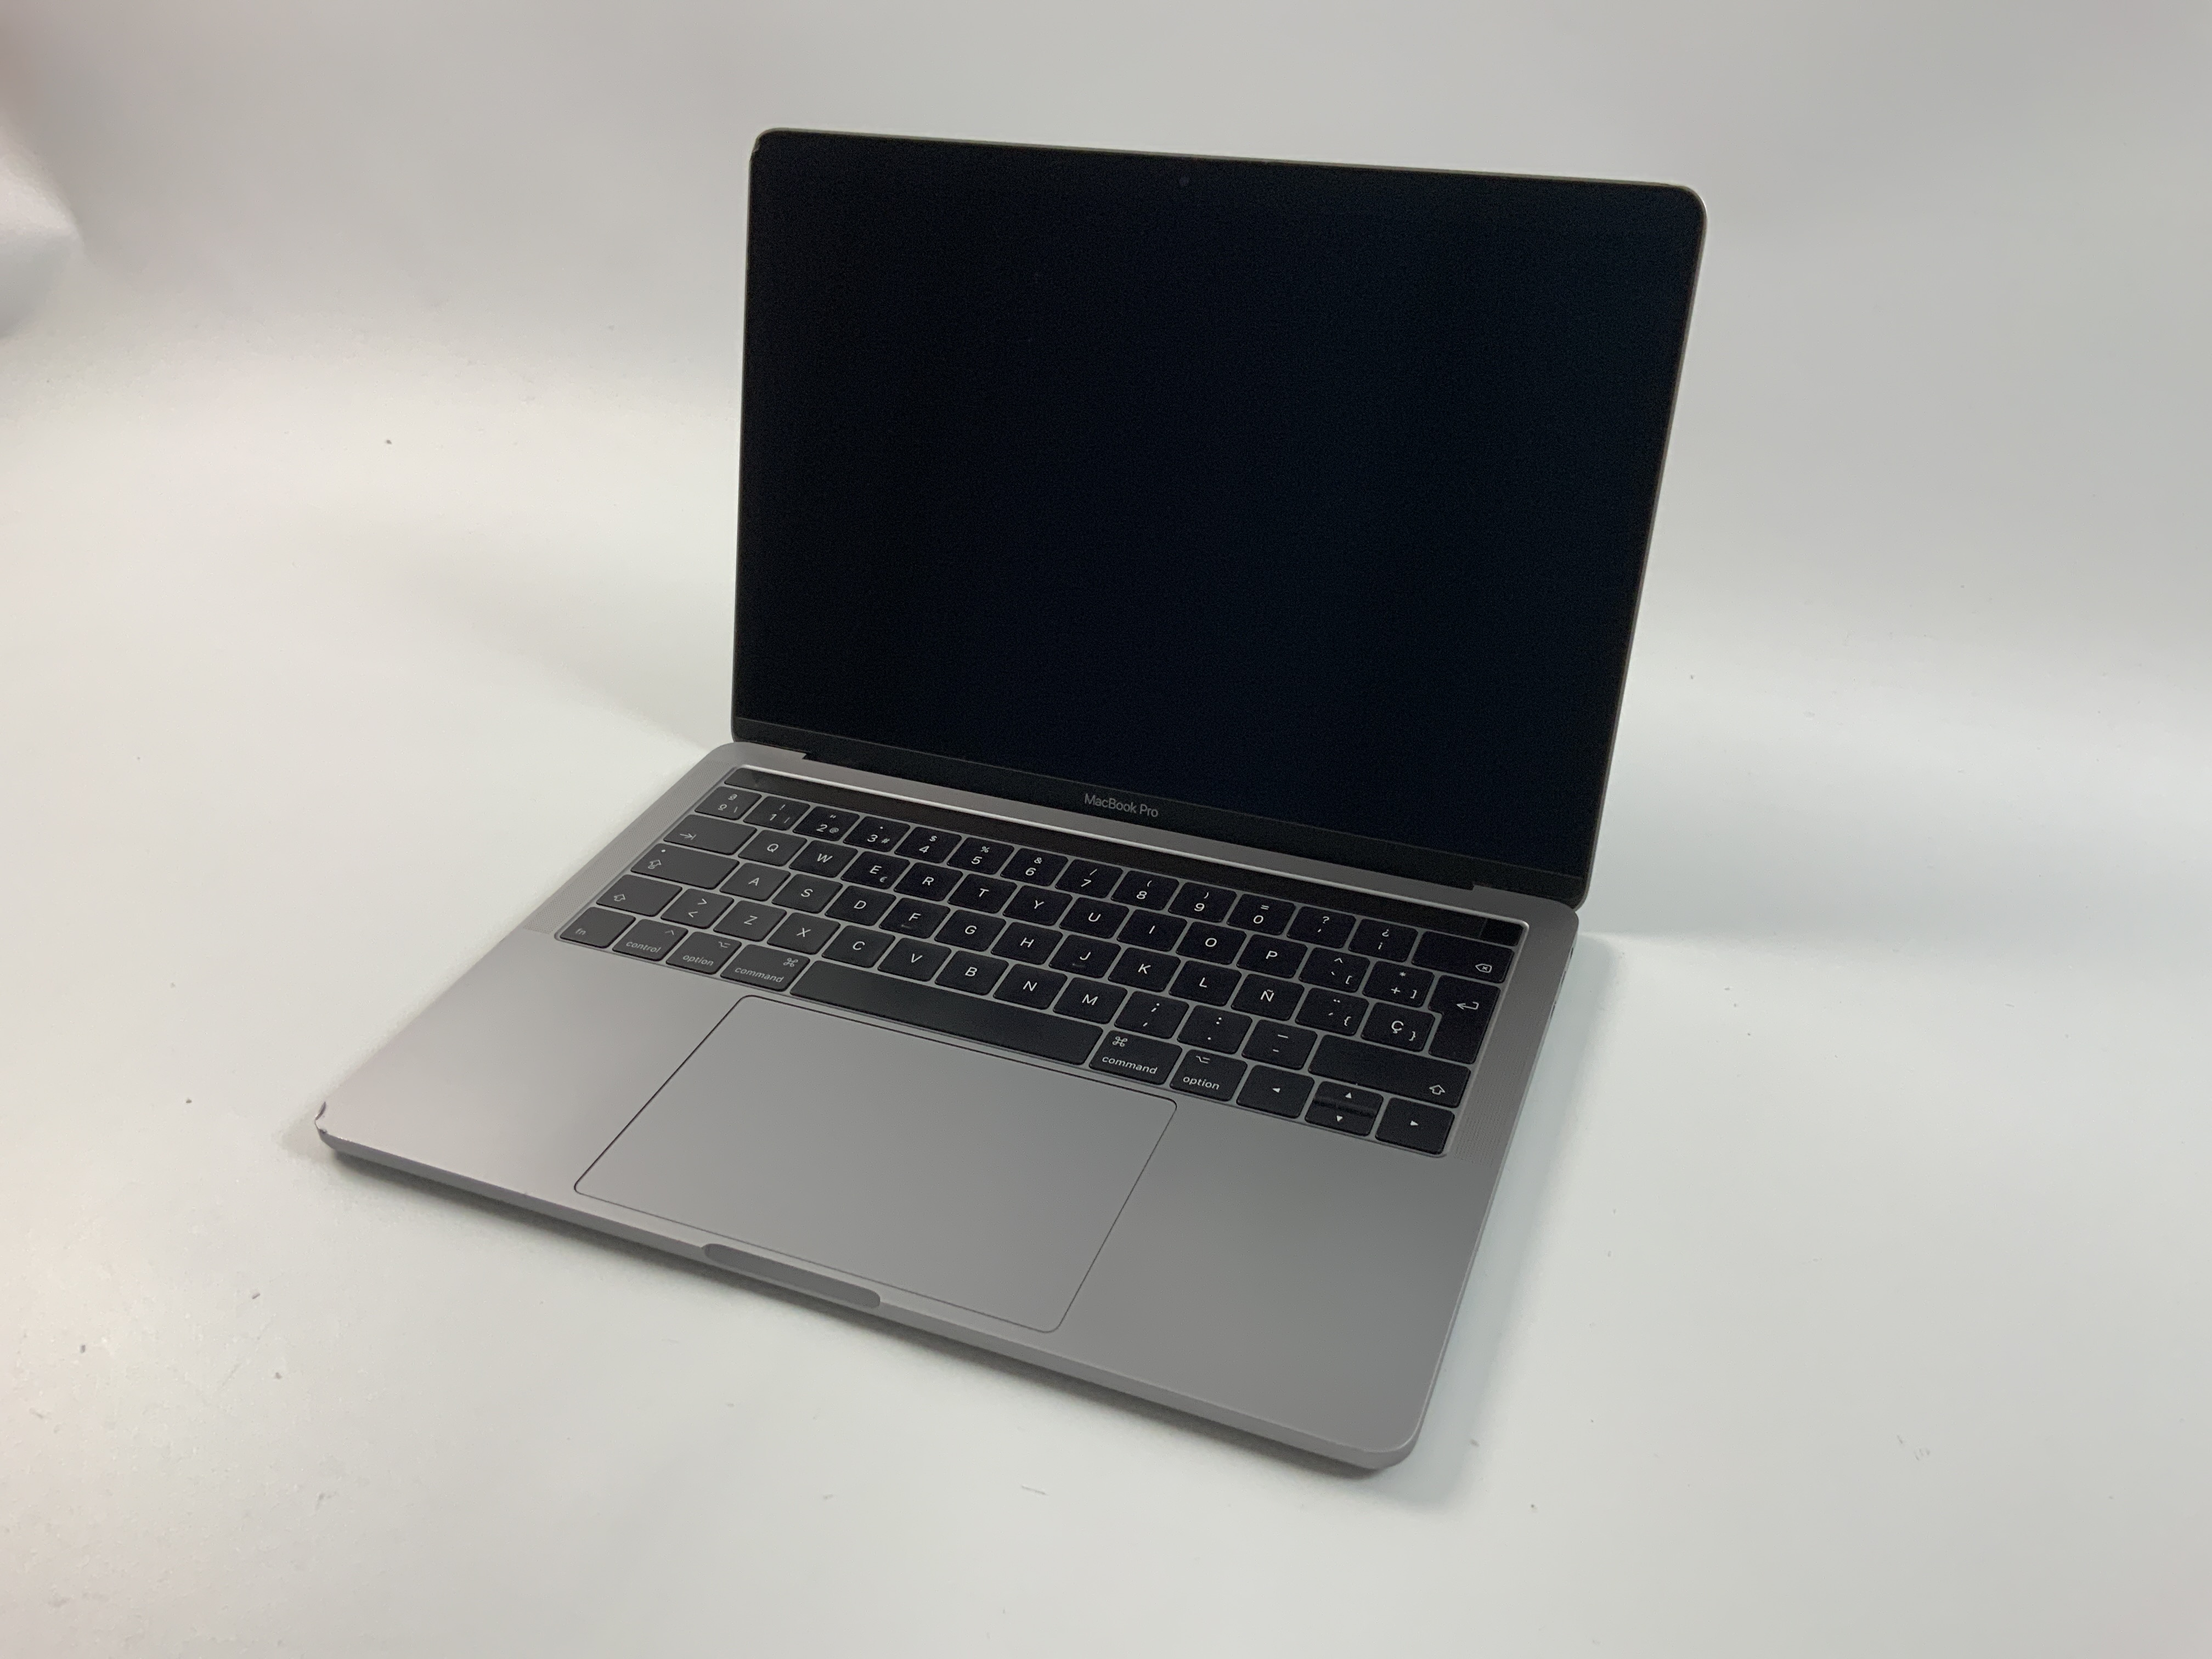 MacBook Pro 13" 4TBT Mid 2017 (Intel Core i5 3.1 GHz 16 GB RAM 256 GB SSD), Space Gray, Intel Core i5 3.1 GHz, 16 GB RAM, 256 GB SSD, bild 1